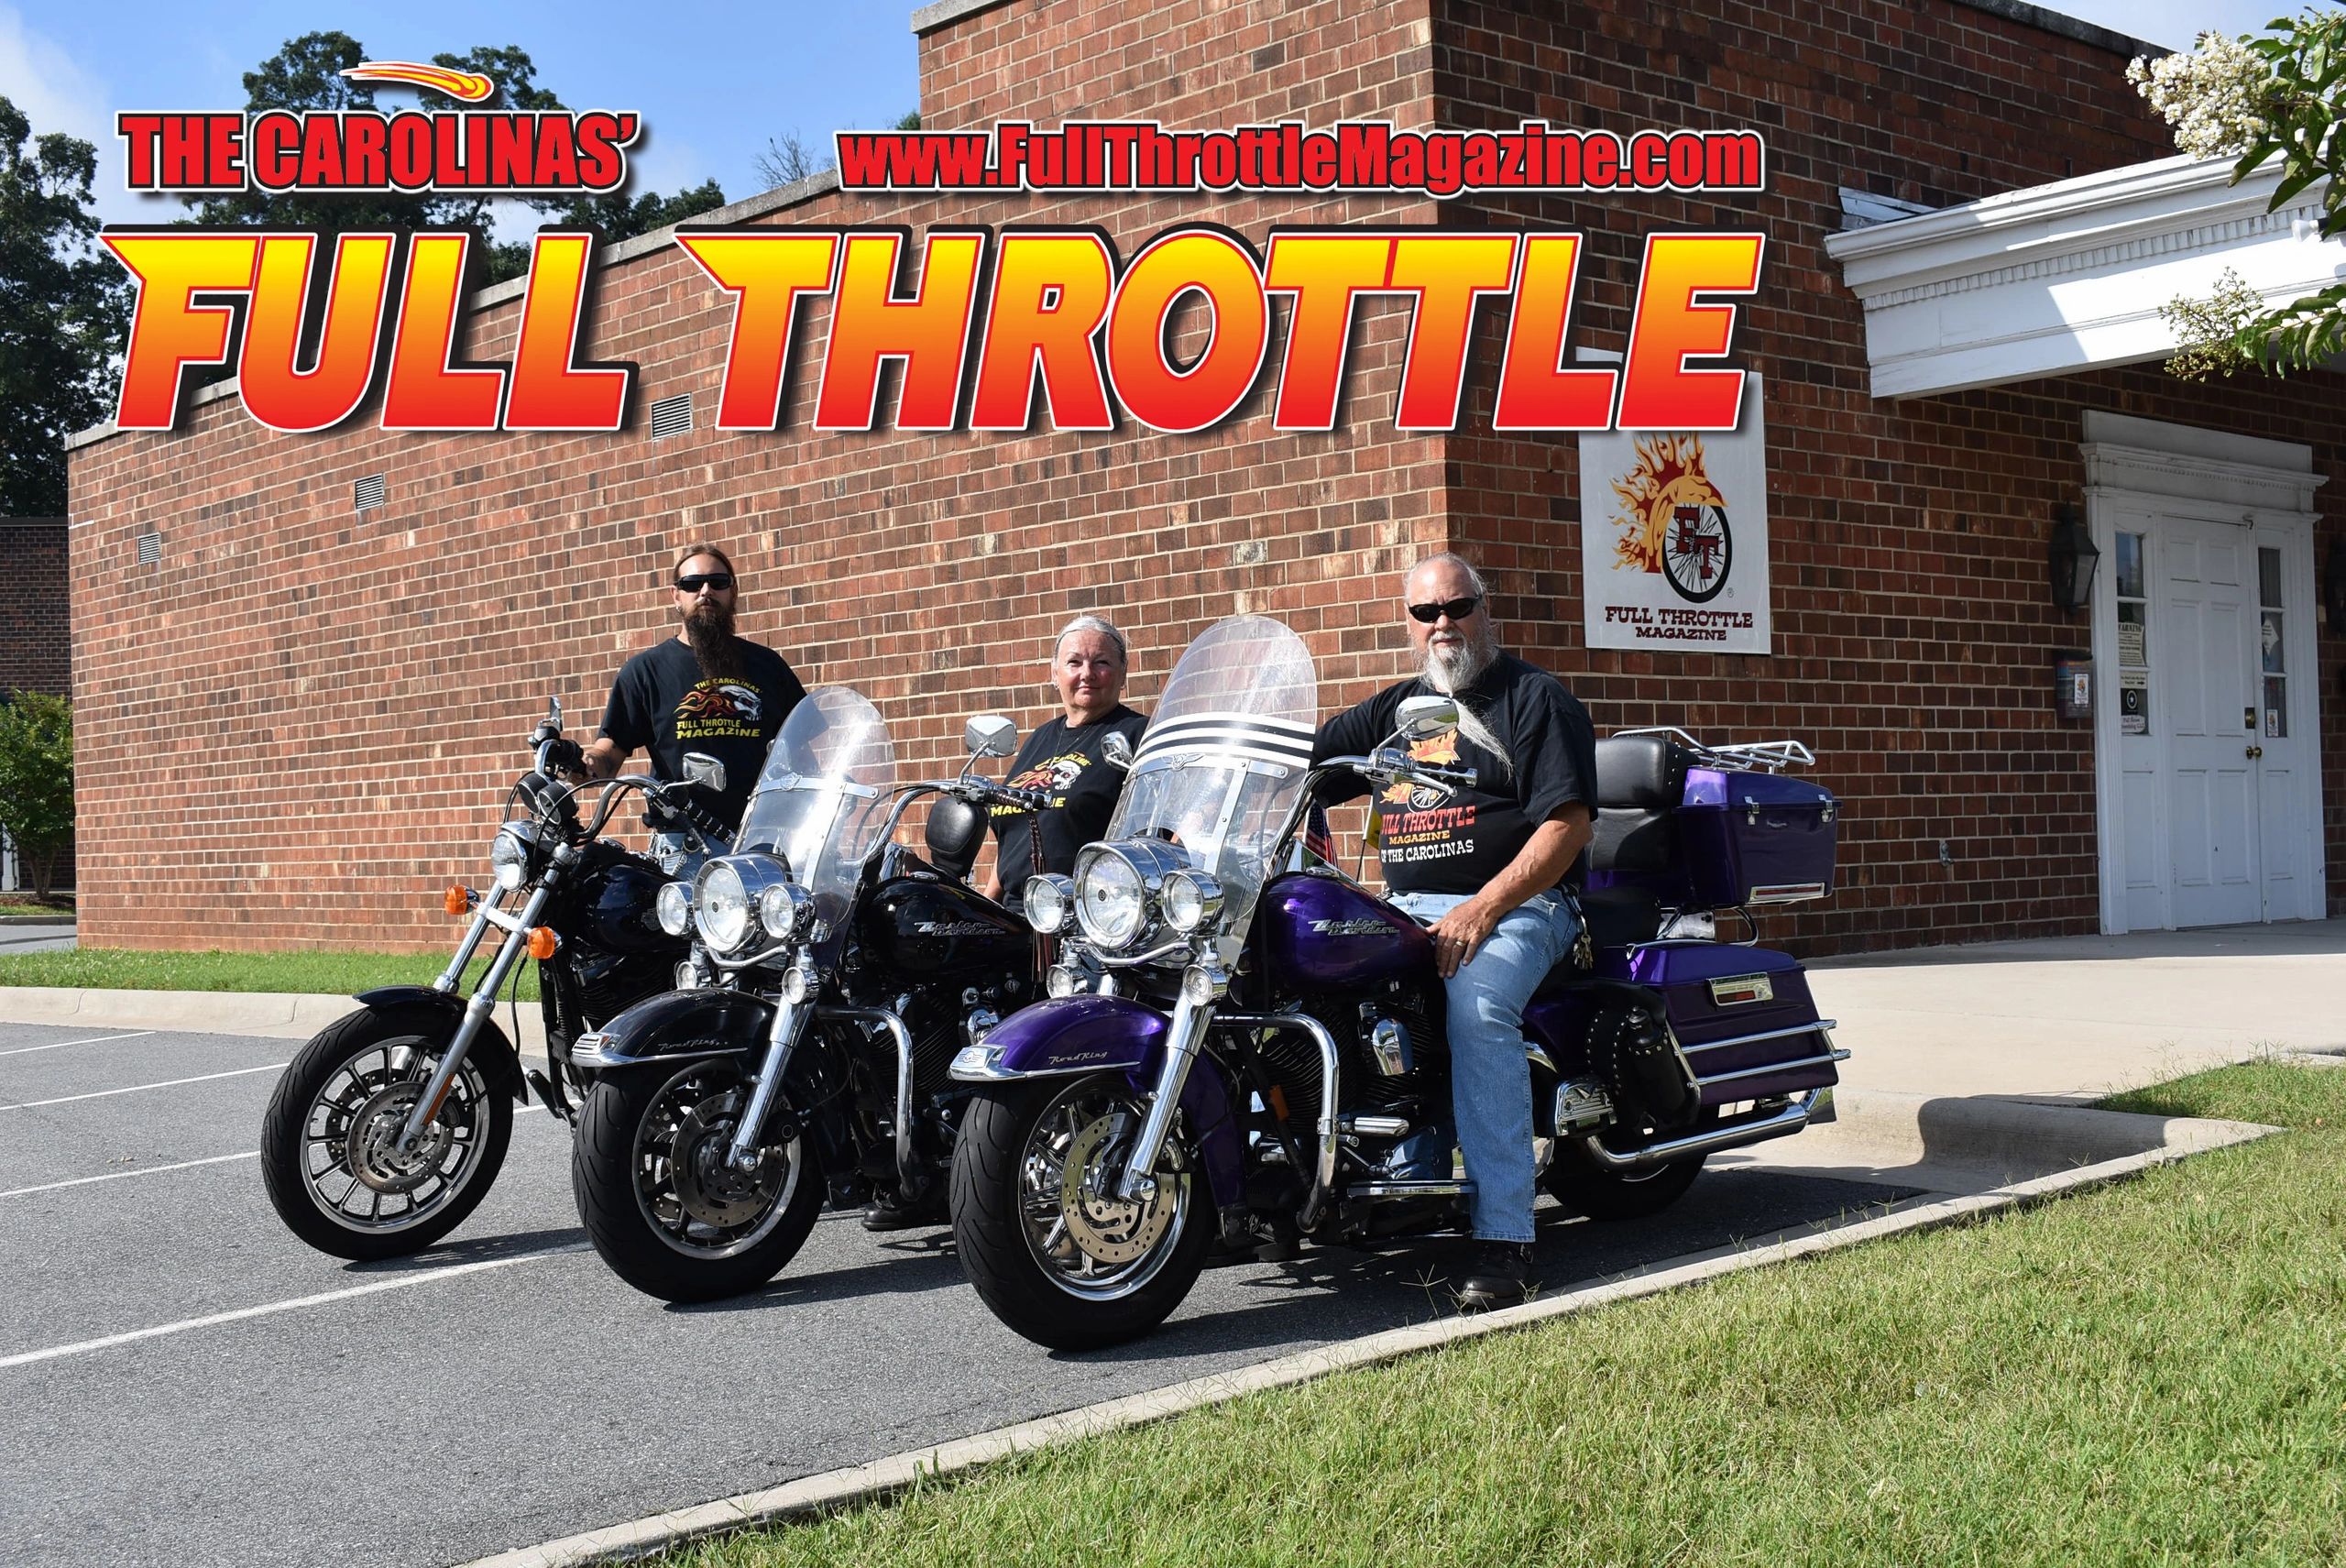 The Carolinas' Full Throttle Magazine